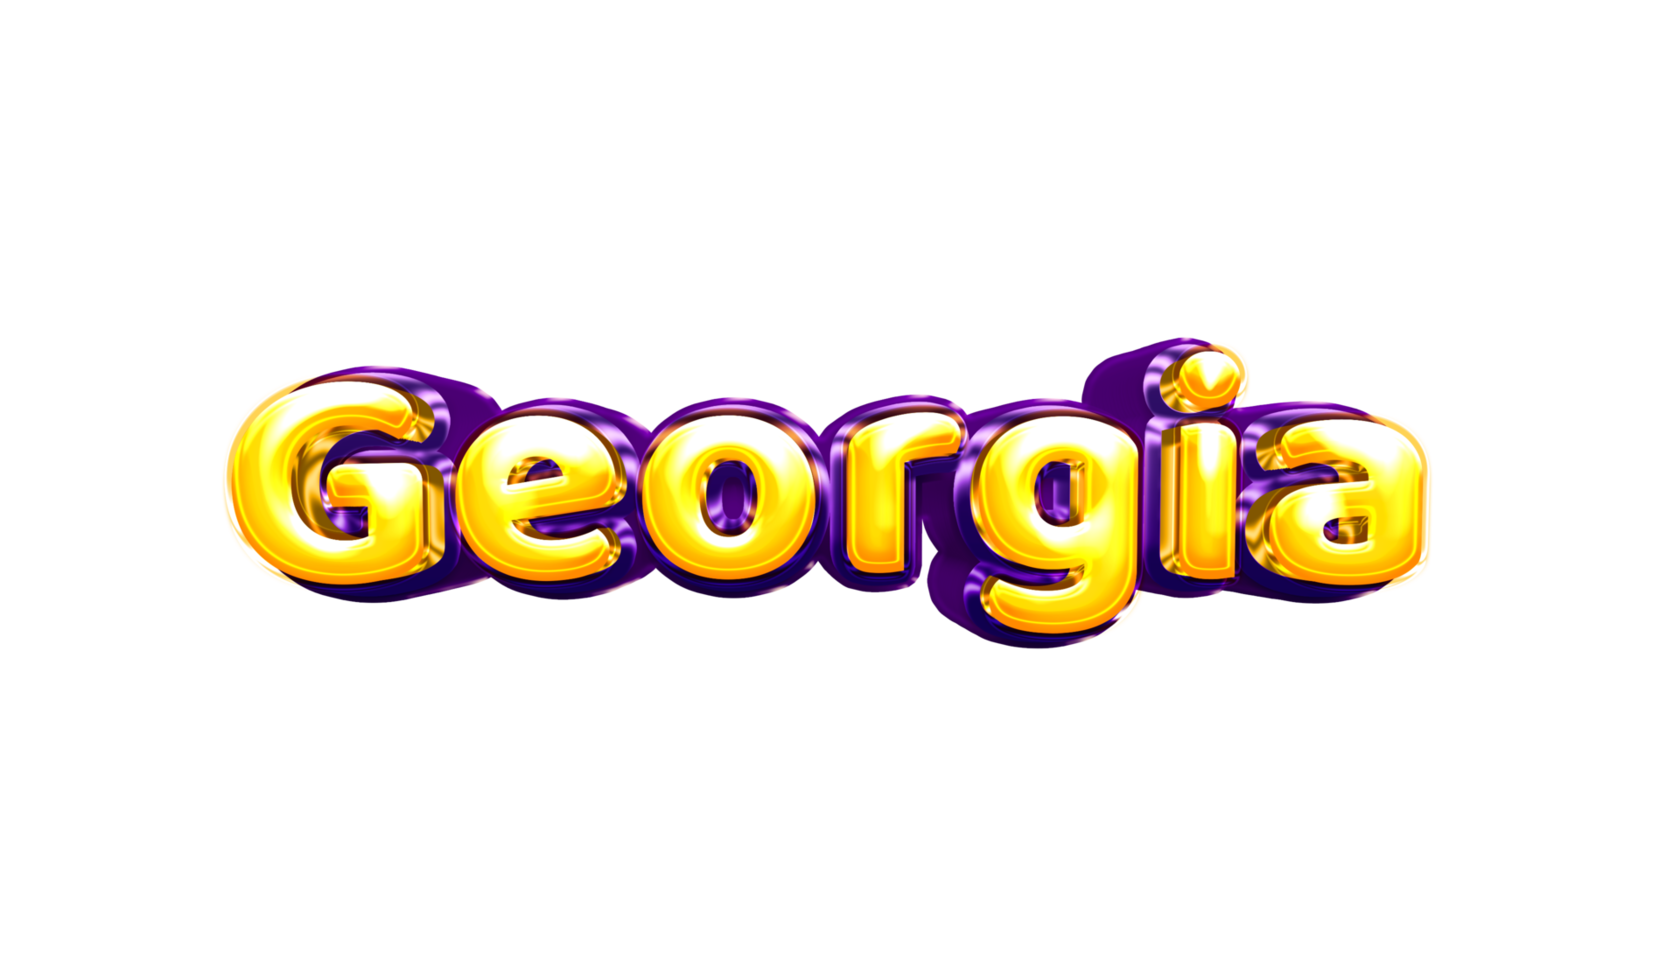 filles nom autocollant couleurs fête ballon anniversaire hélium air brillant jaunes violet découpe géorgie géorgie png